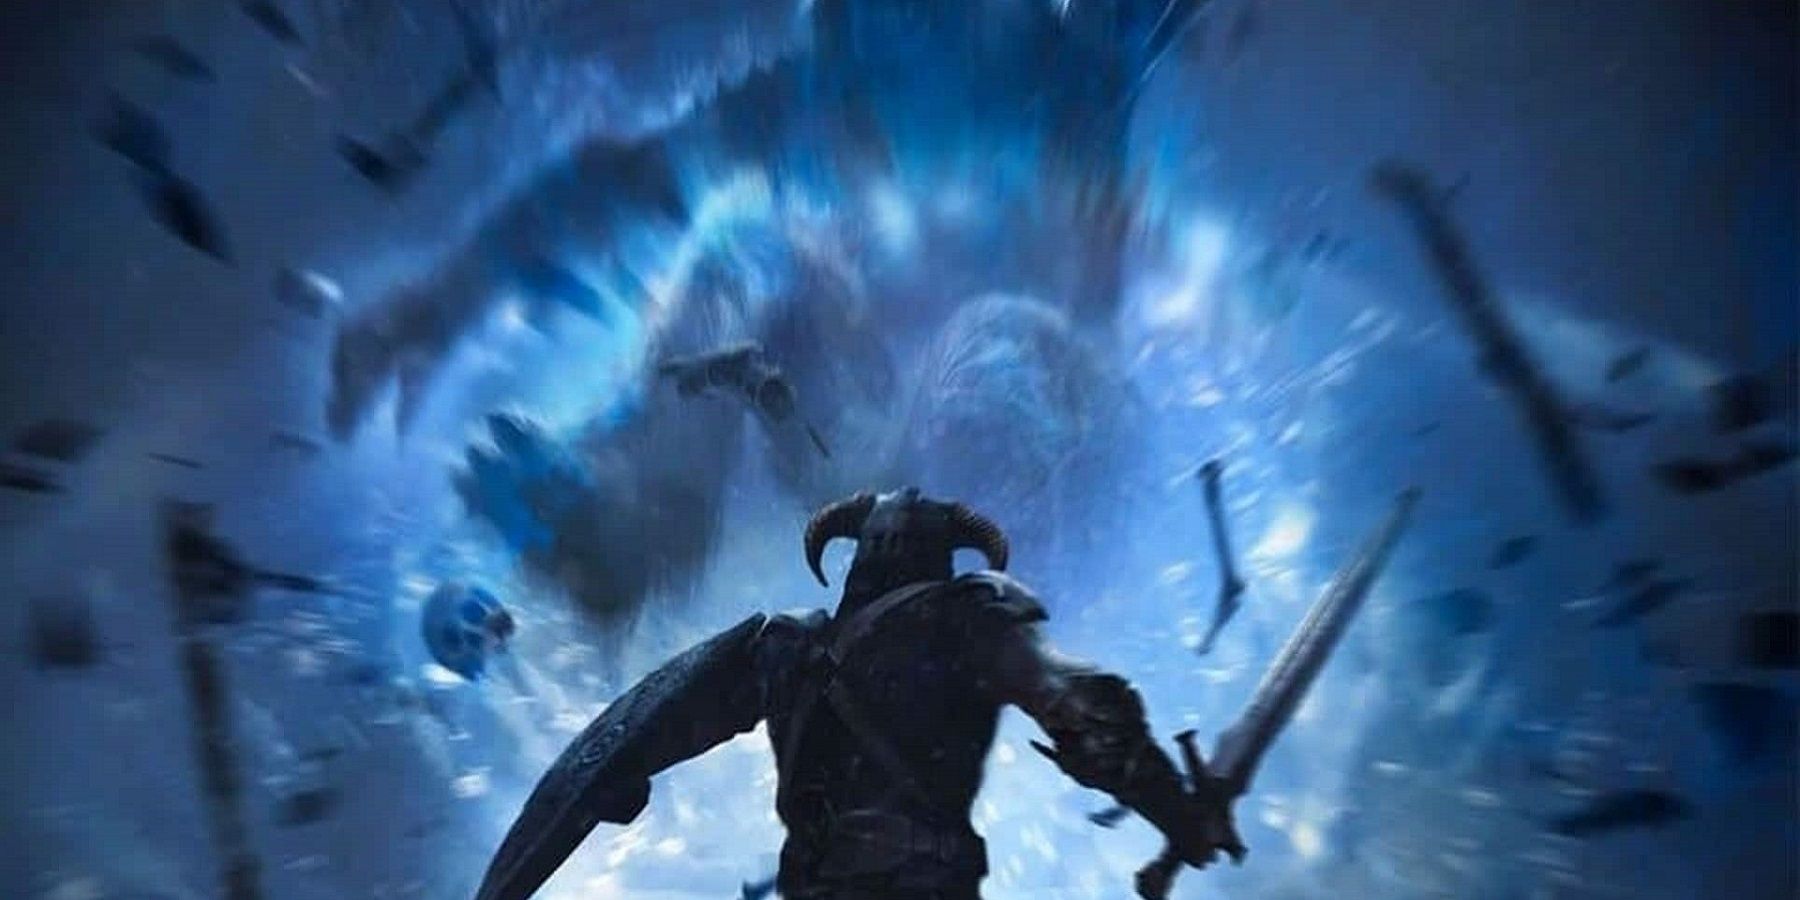 Синее изображение из Скайрима, на котором драконорождённый кричит на ледяного тролля.